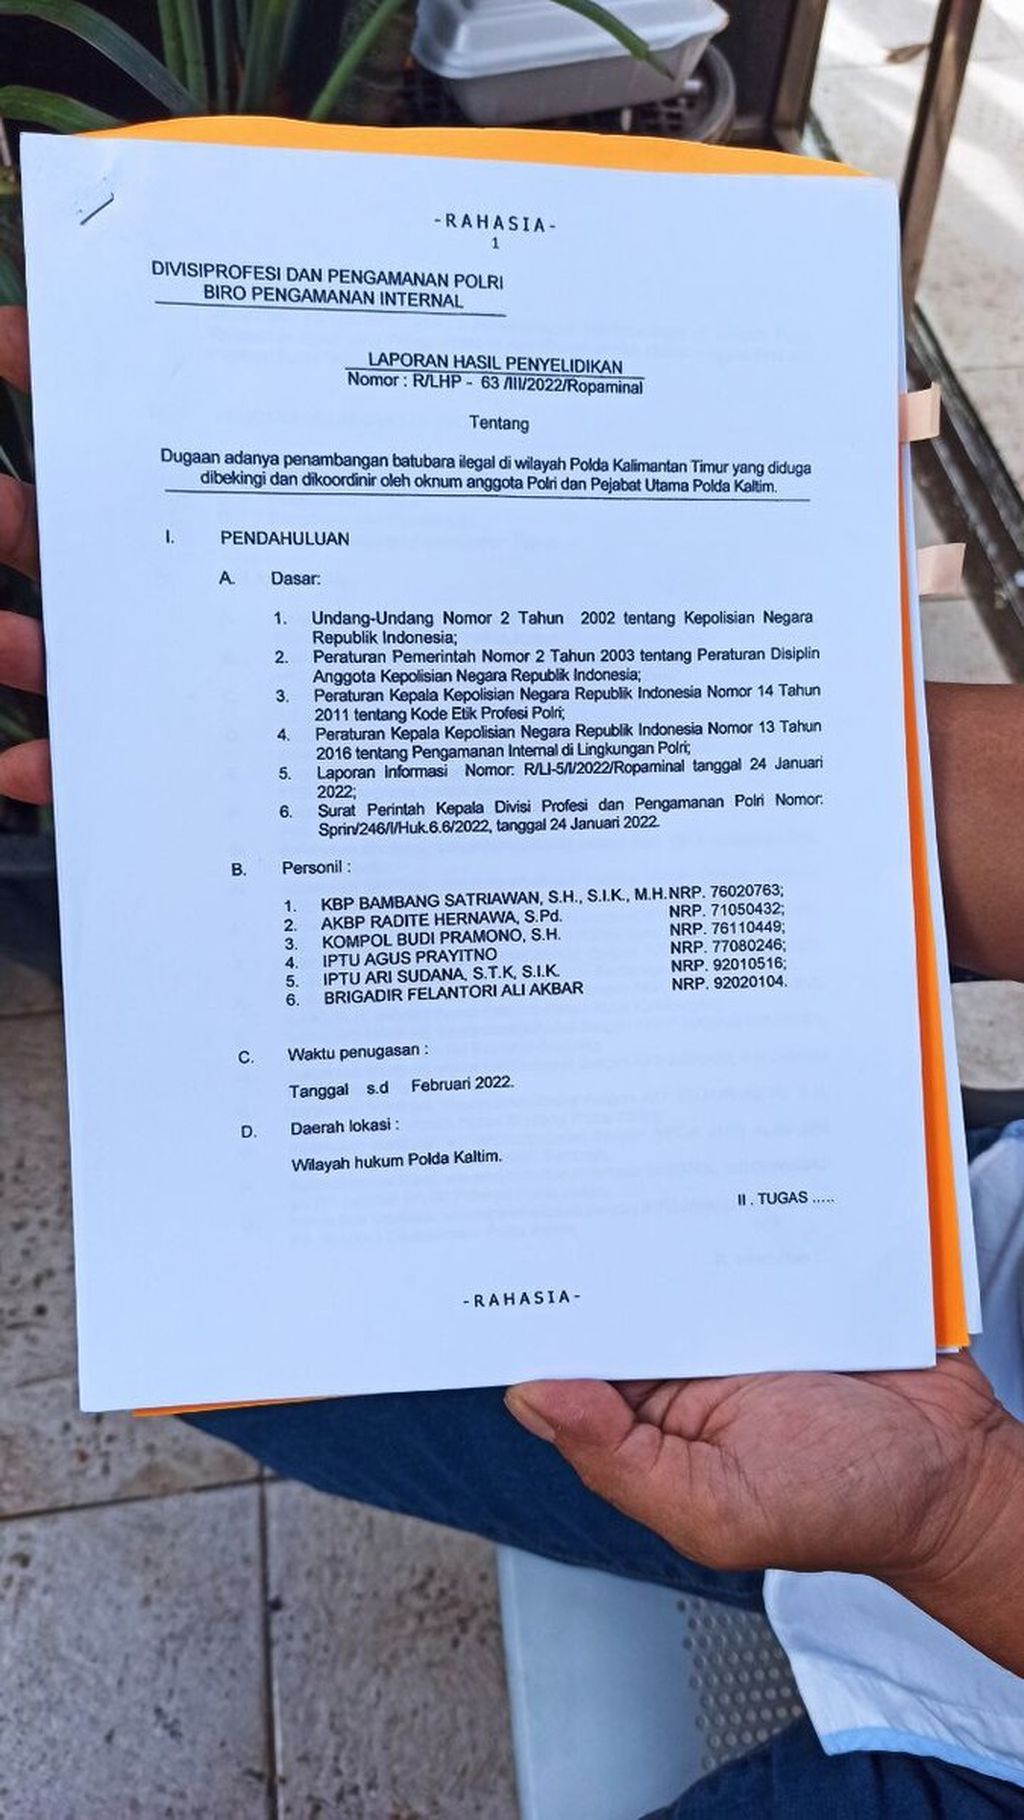 Salinan berkas Laporan Hasil Penyelidikan Dugaan Penerimaan Uang Koordinasi yang melibatkan pejabat kepolisian secara terstruktur terkait dengan kegiatan tambang batubara ilegal di Kalimantan Timur yang dibawa Jaringan Aktivis Pro Demokrasi ke Divisi Profesi dan Pengamanan Polri, Senin (7/11/2022).